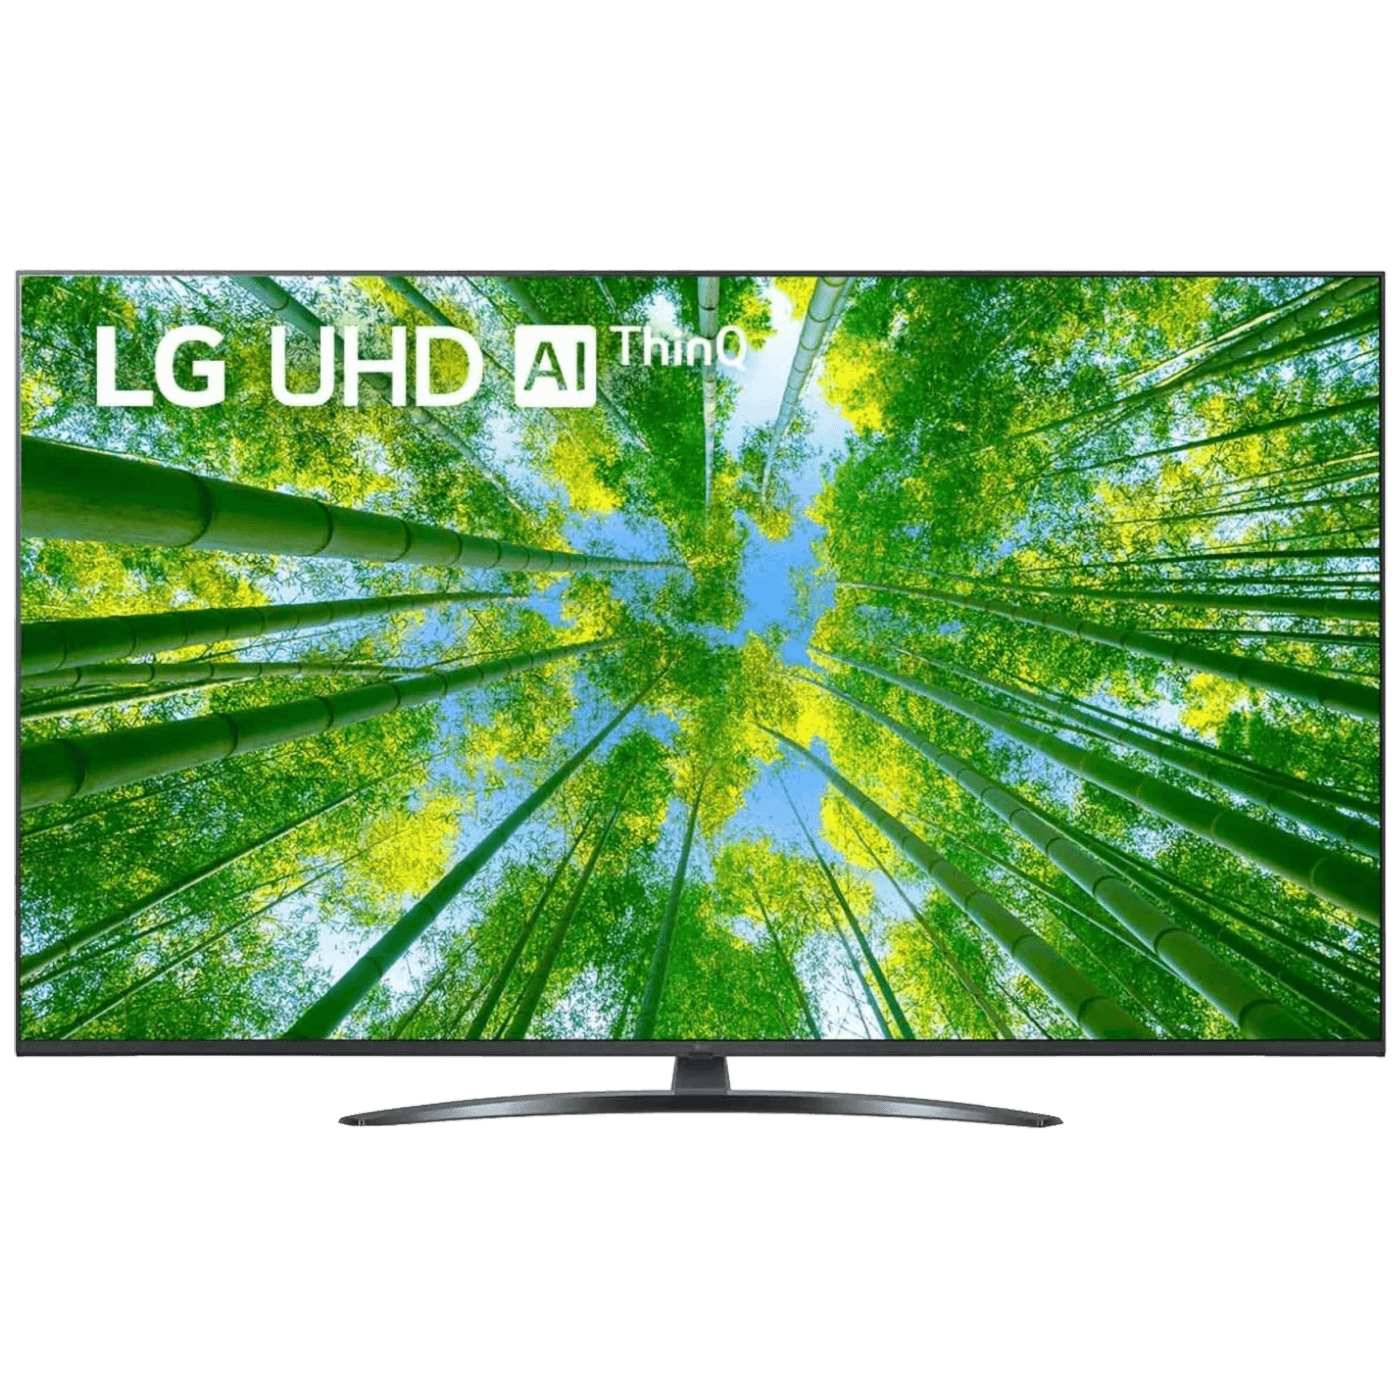 LG TV - Smart 4K LED TV 55